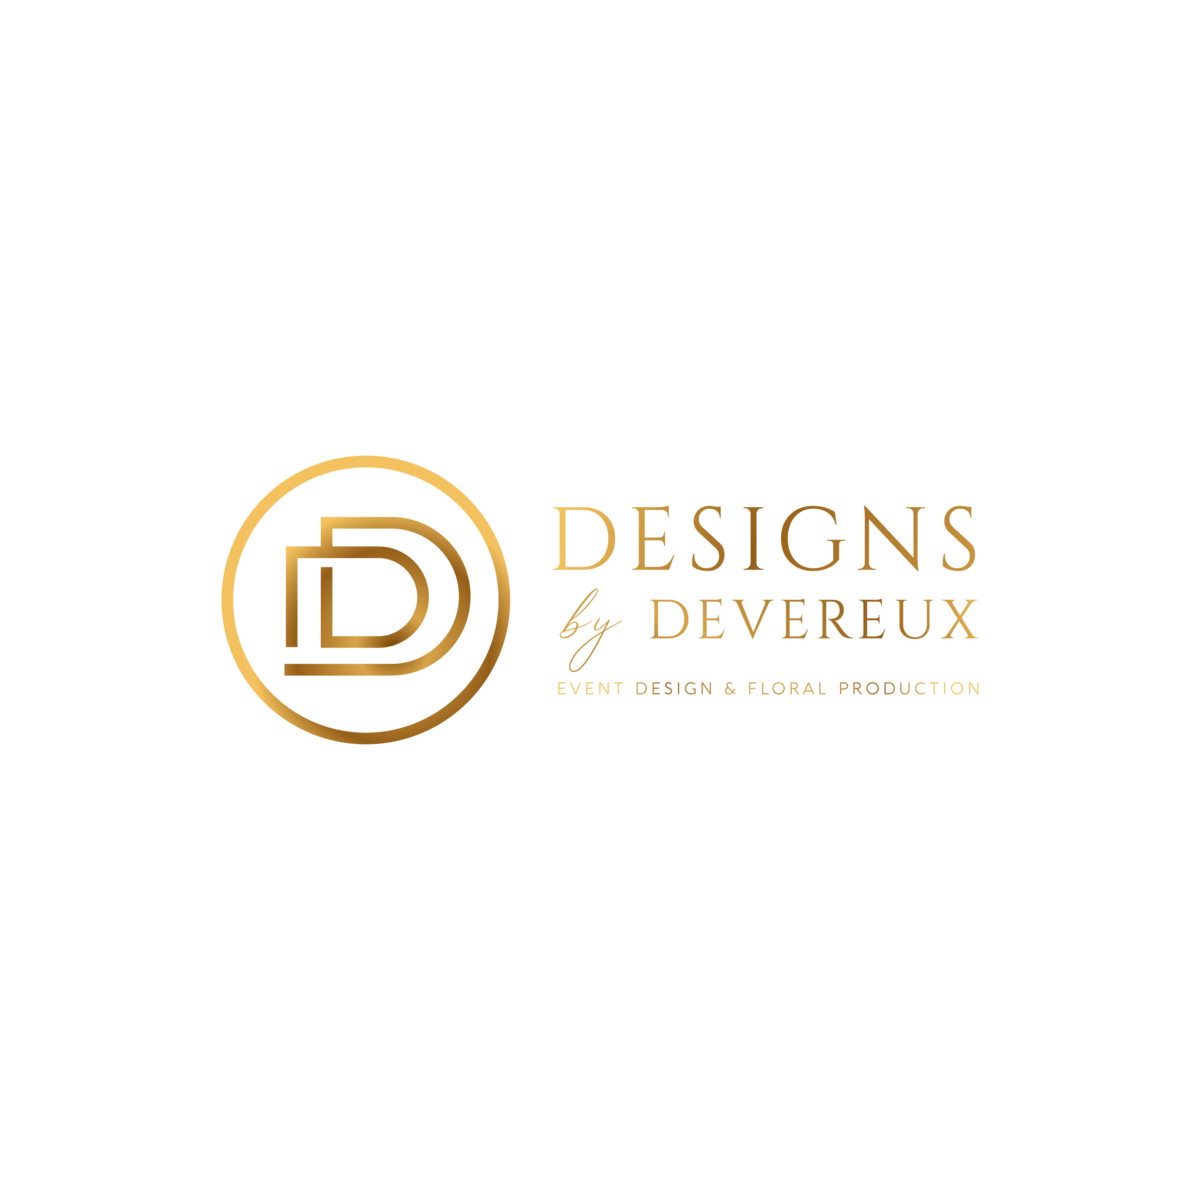 Designs by Devereux